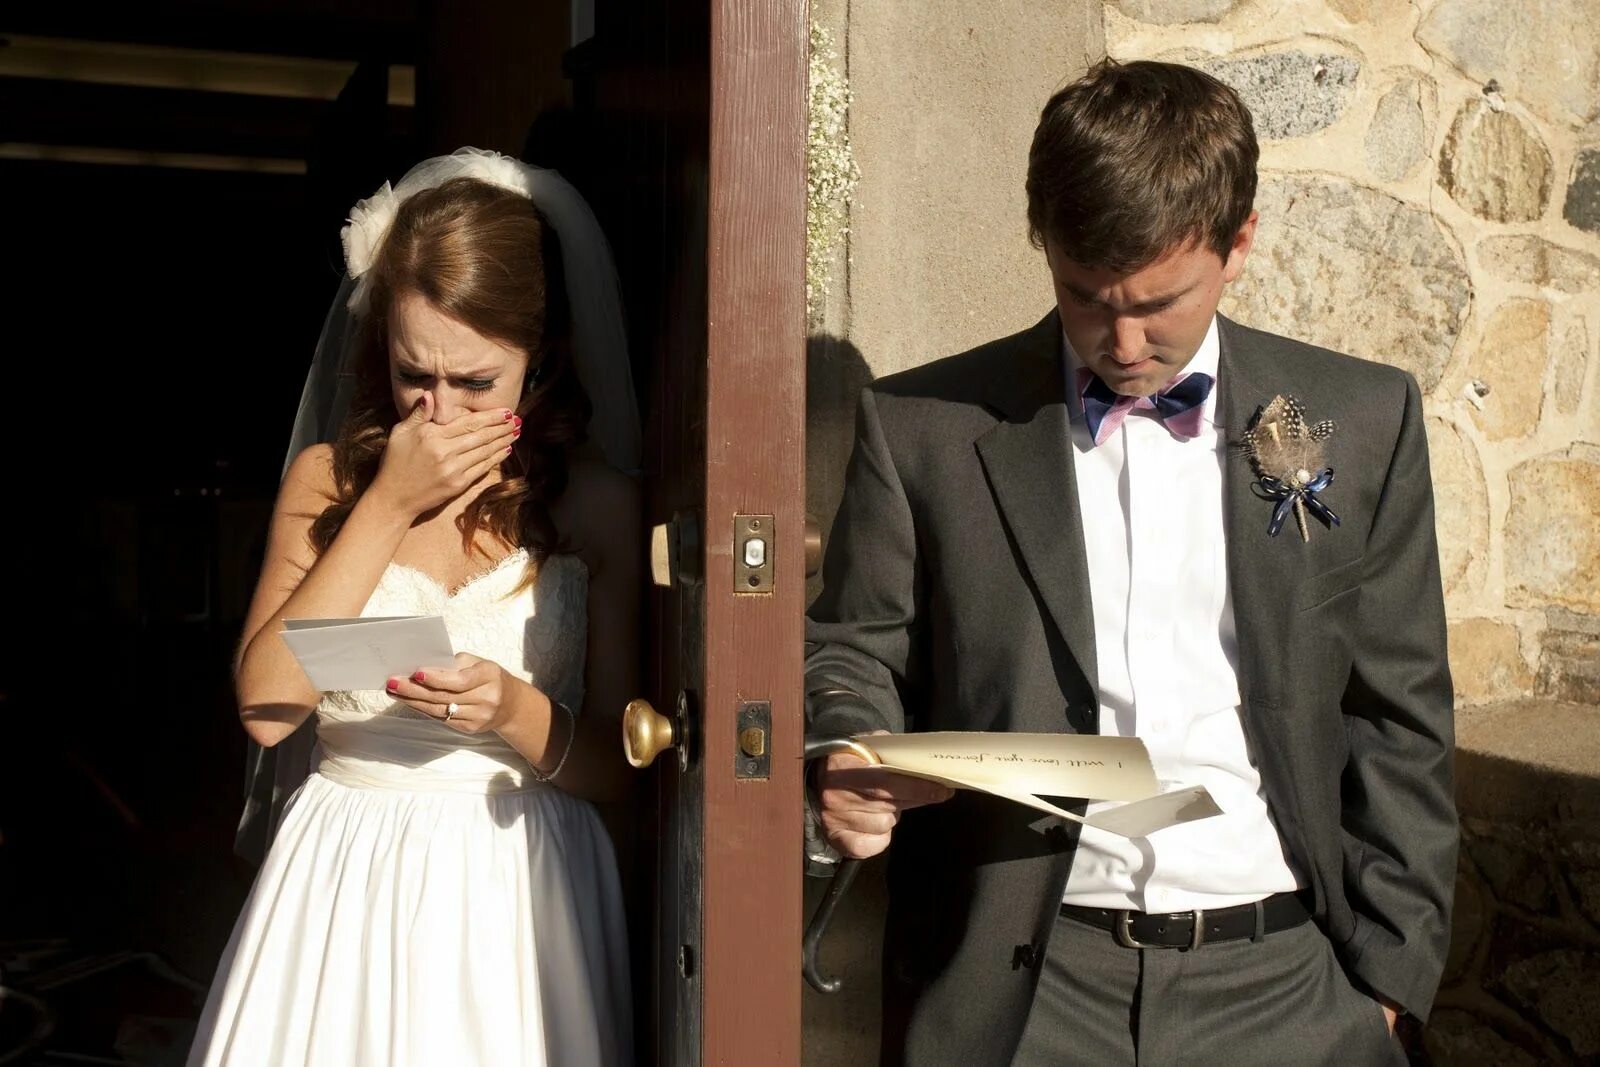 Мужчина и женщина свадьба. Невеста изменяет жениху на свадьбе. Парень перед свадьбой. Фотосессия перед свадьбой жених и невеста. Мужем видели на свадьбе